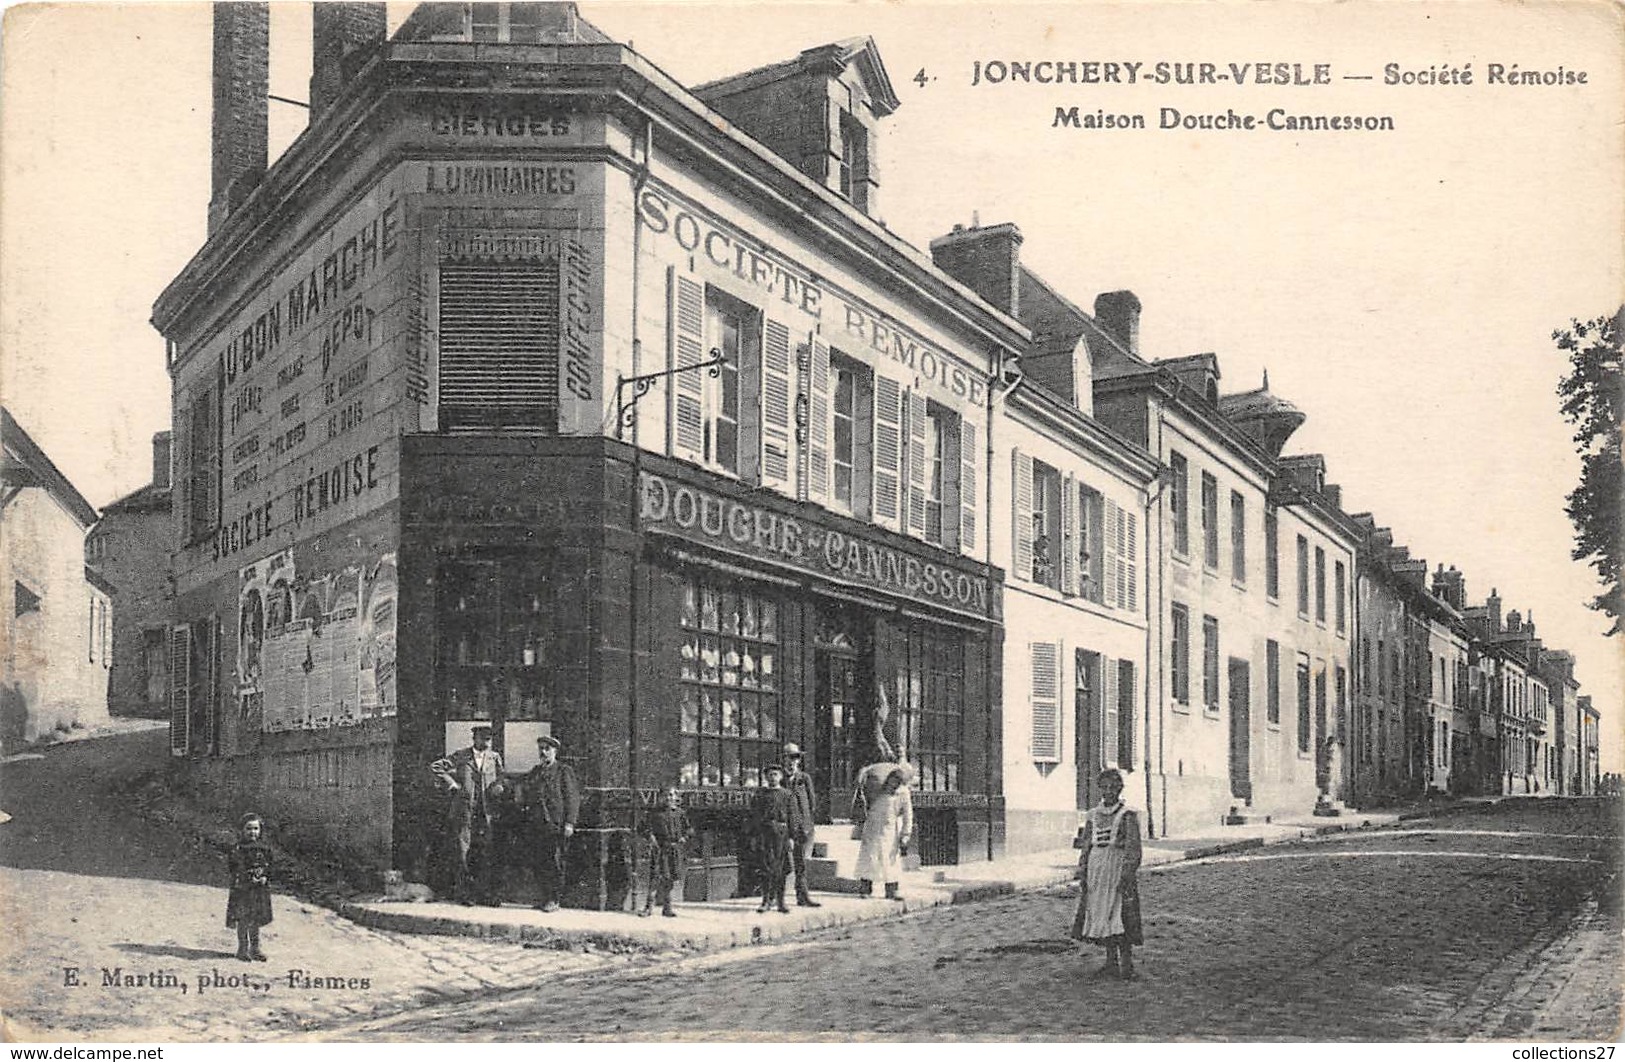 51-JONCHERY-SUR-VESLE- SOCIETE REMOISE, MAISON DOUCHE-CANNESSON - Jonchery-sur-Vesle